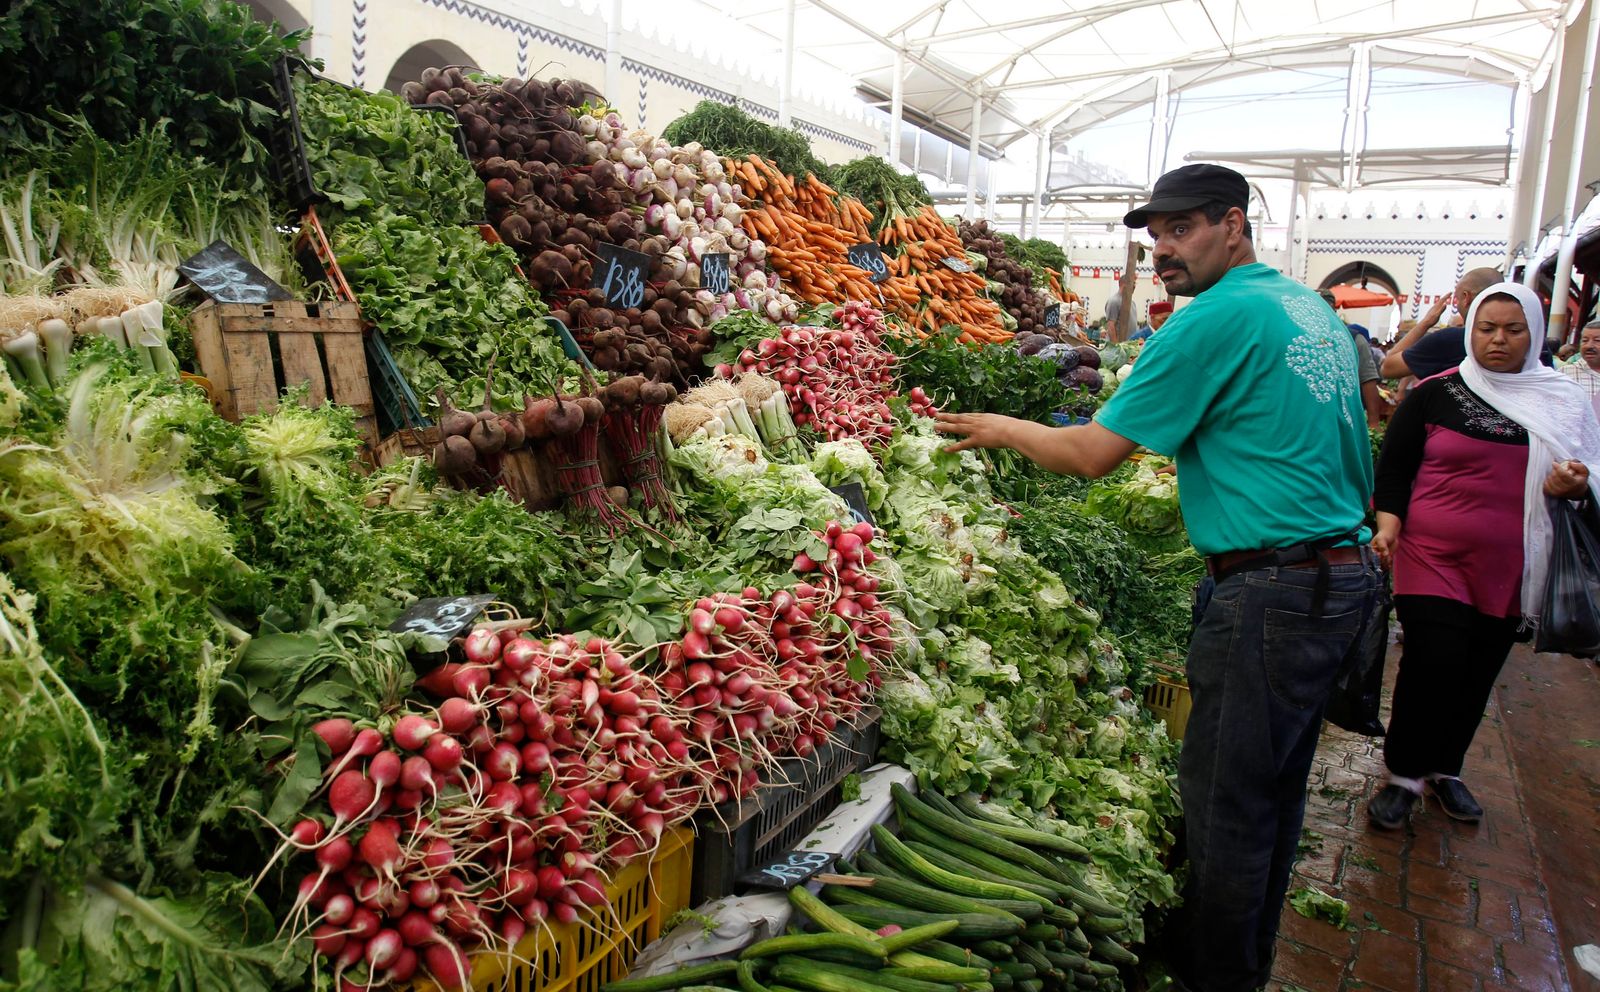 بائع يعرض خضرواته خلال شهر رمضان في مدينة تونس - 10 يوليو 2013 - Reuters